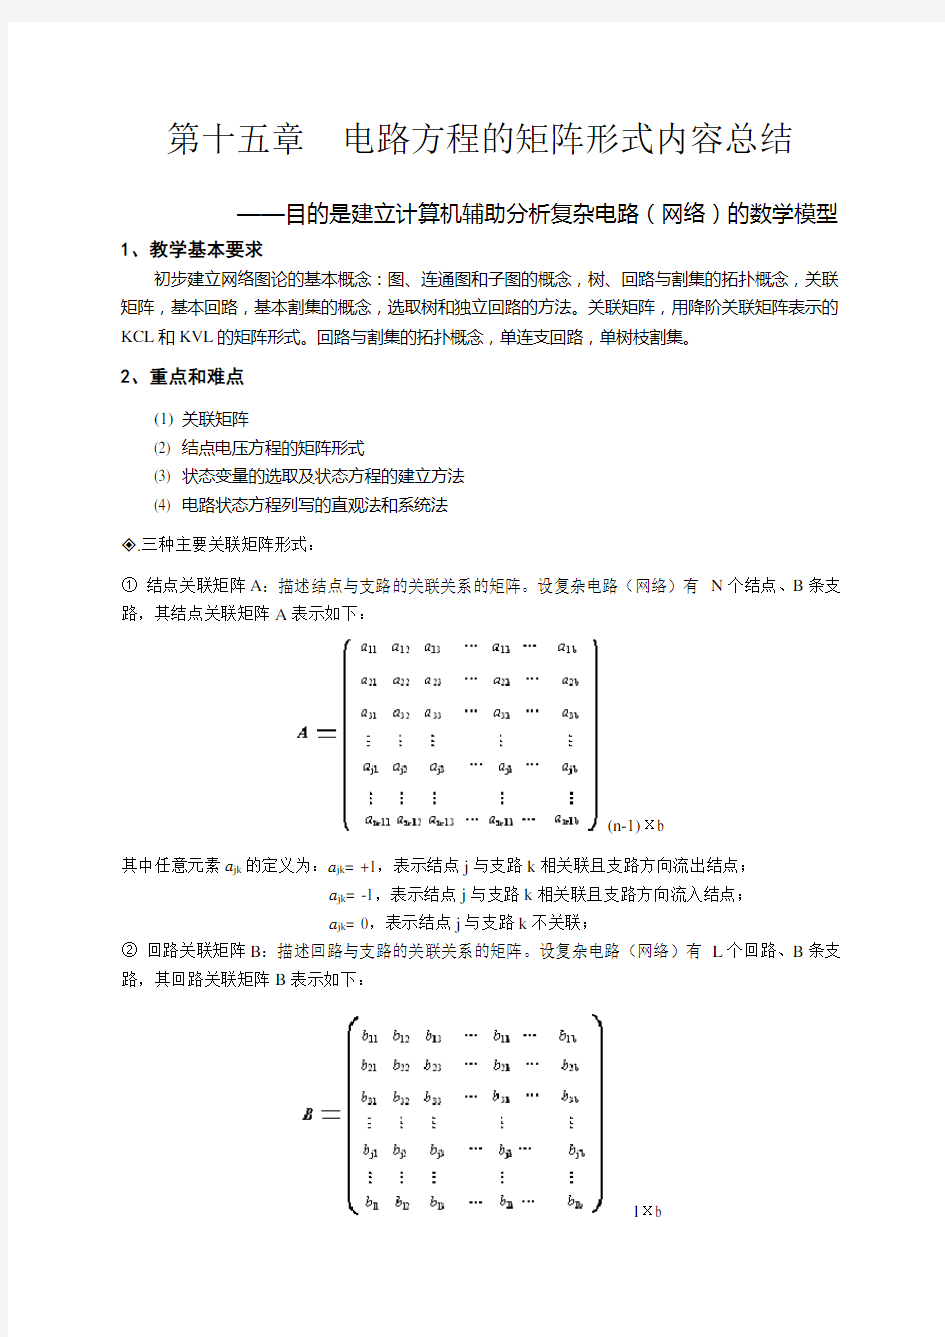 天津理工电路习题及答案  第十五章  电路方程的矩阵形式..